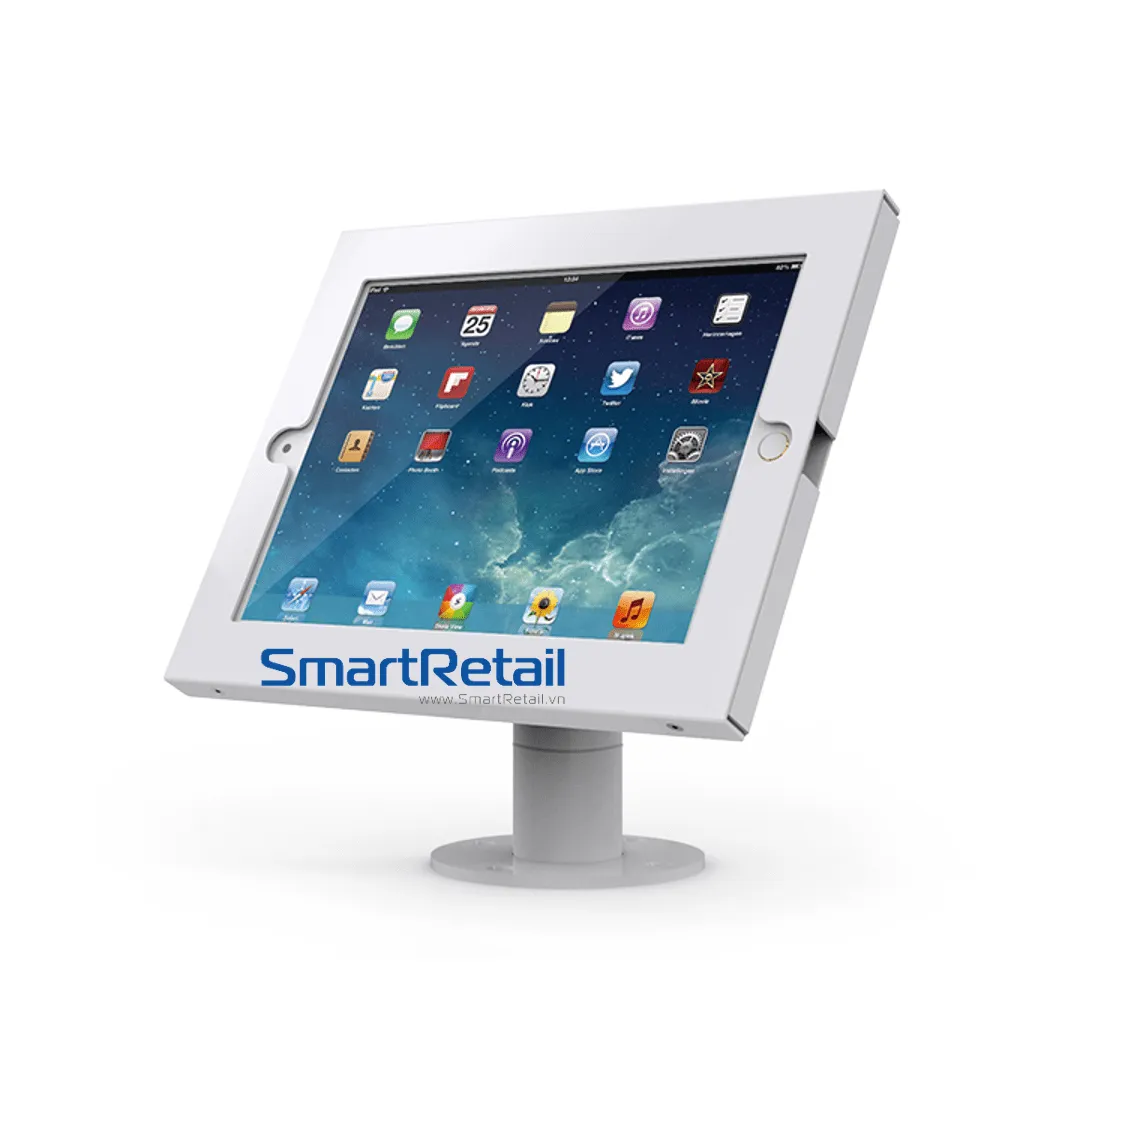 Giá đỡ máy tính bảng để bàn SC-201 - SmartRetail - 0935888489